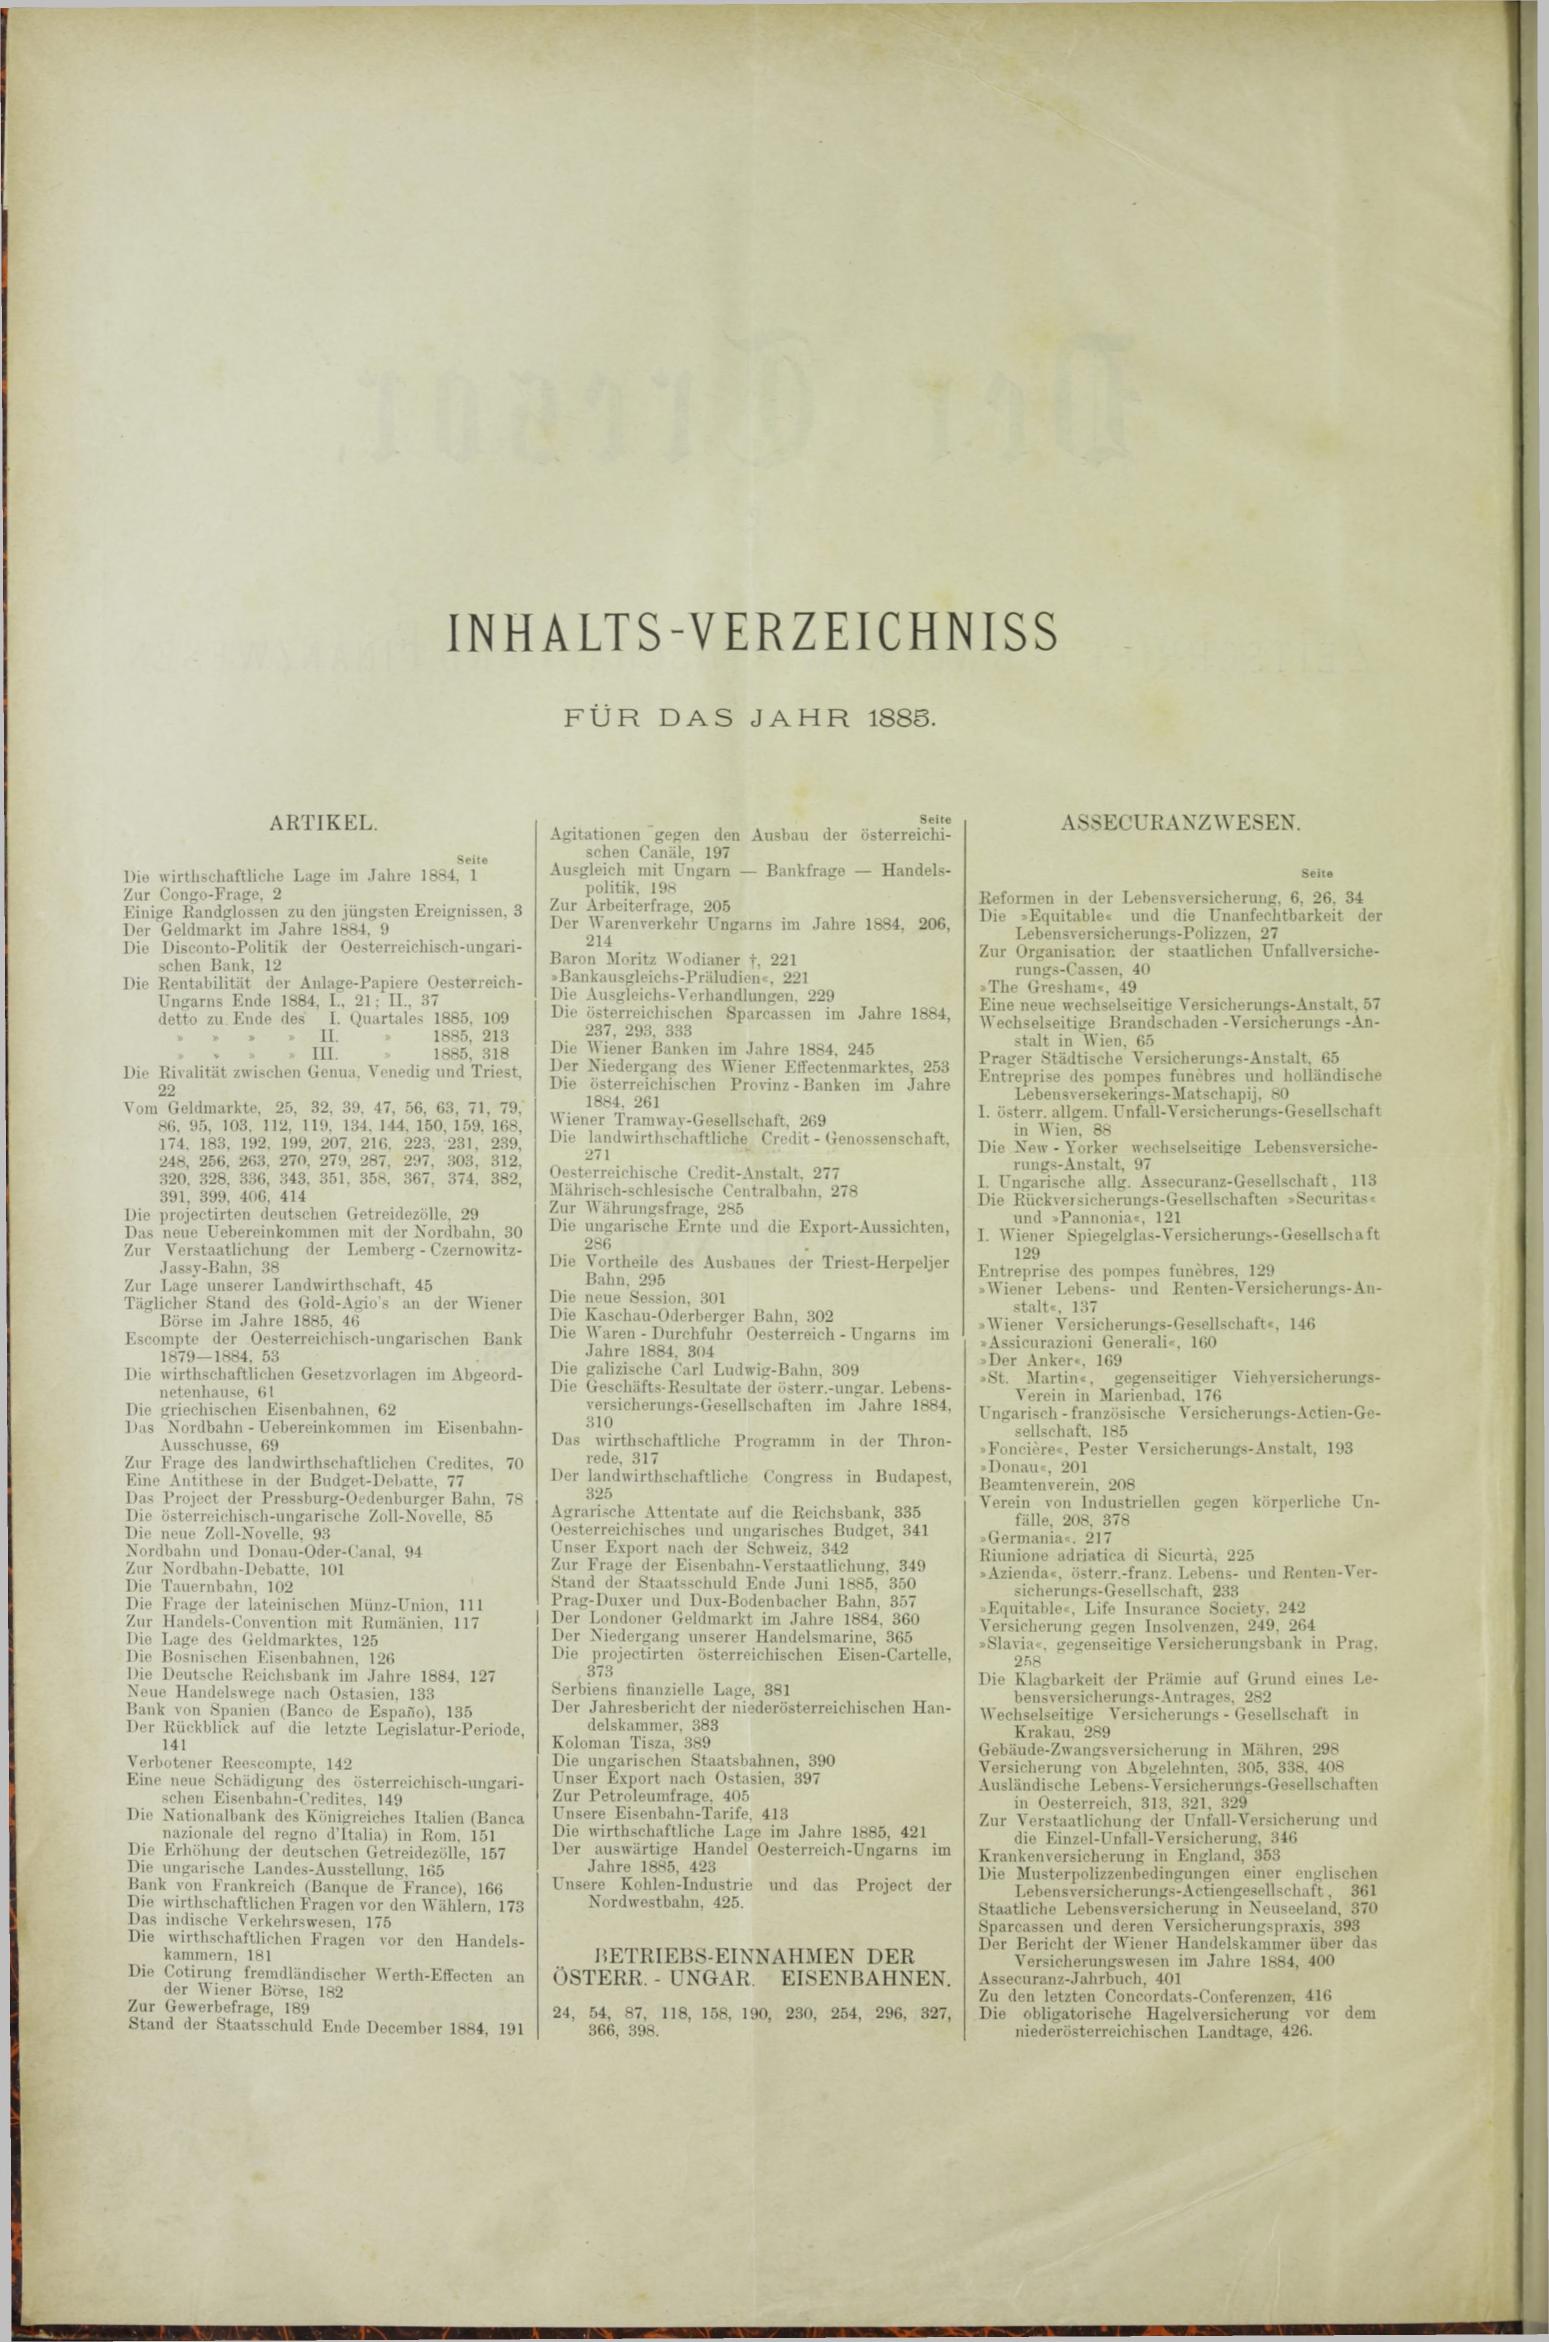 Der Tresor 04.06.1885 - Seite 10